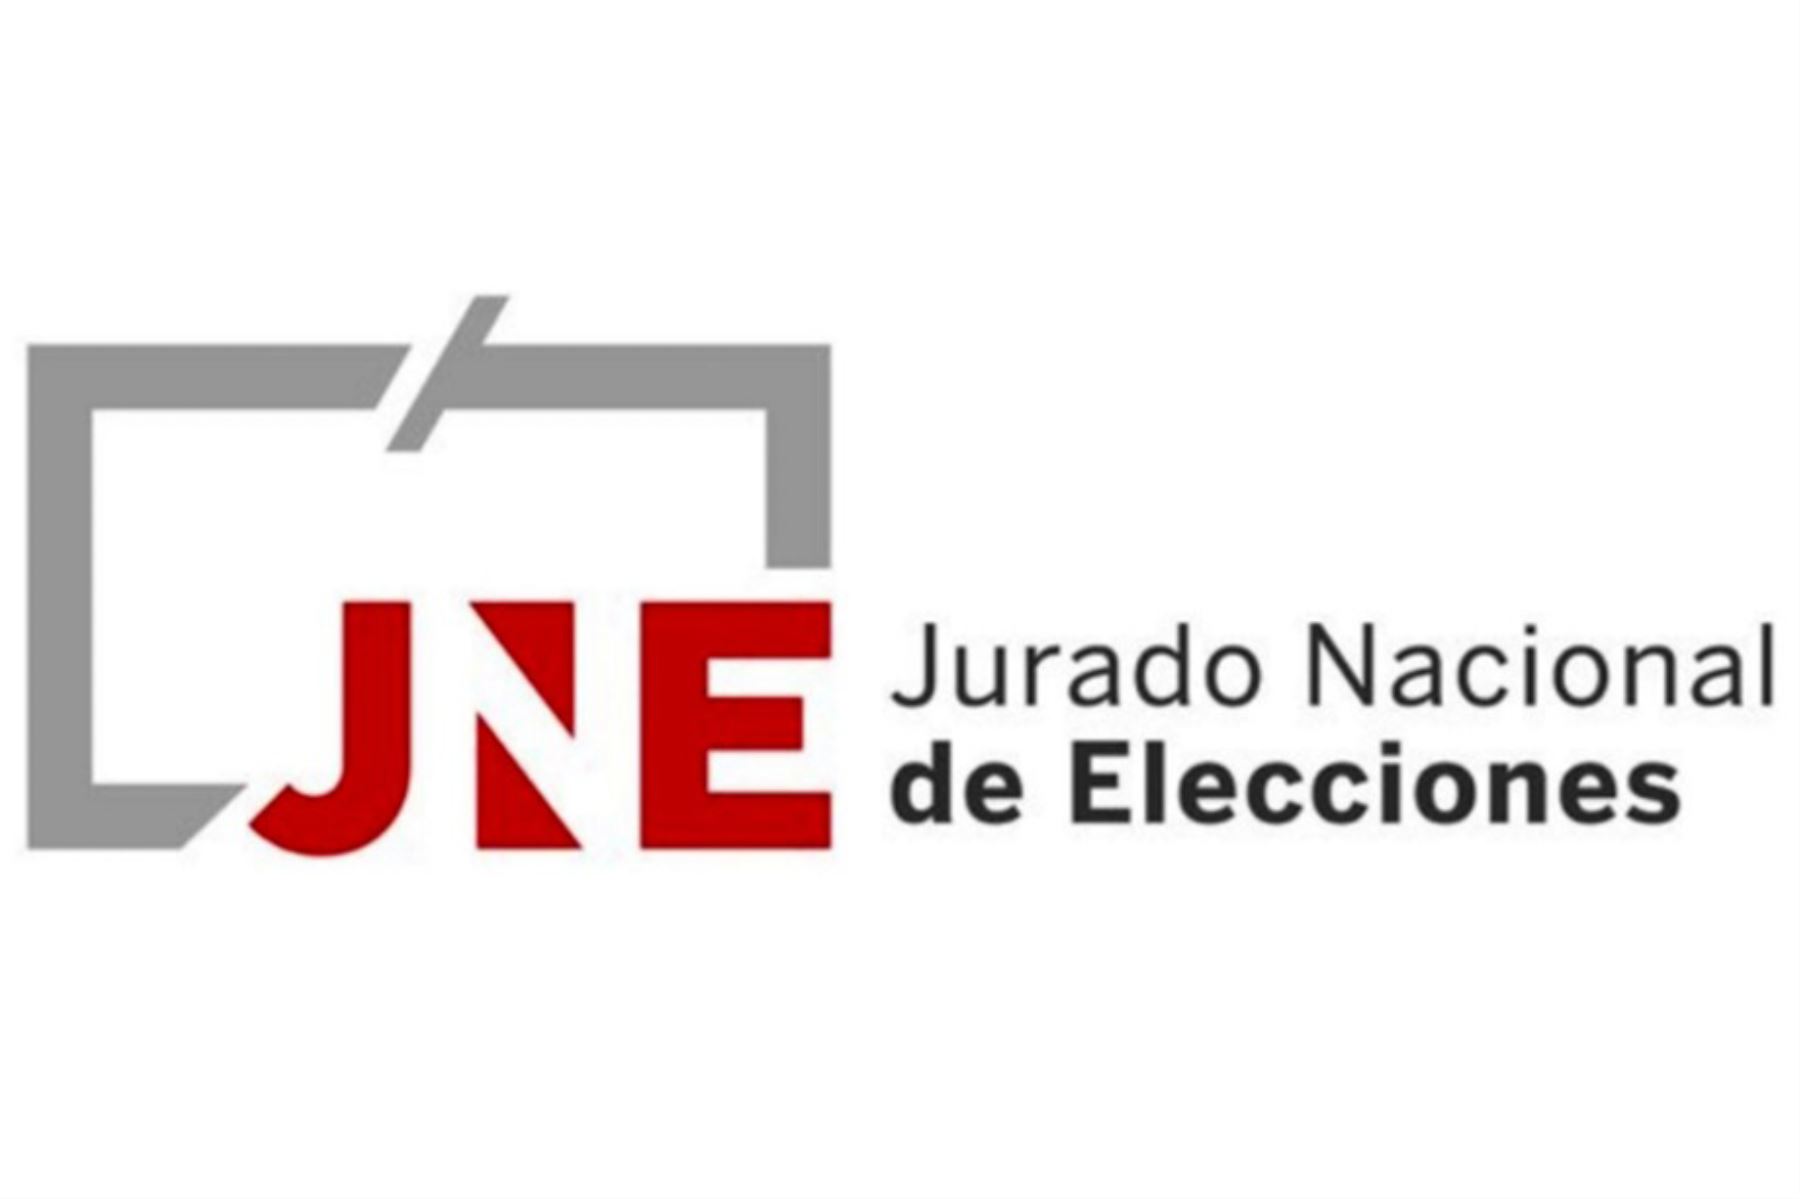 Nuevo logotipo del Jurado Nacional de Elecciones (JNE).